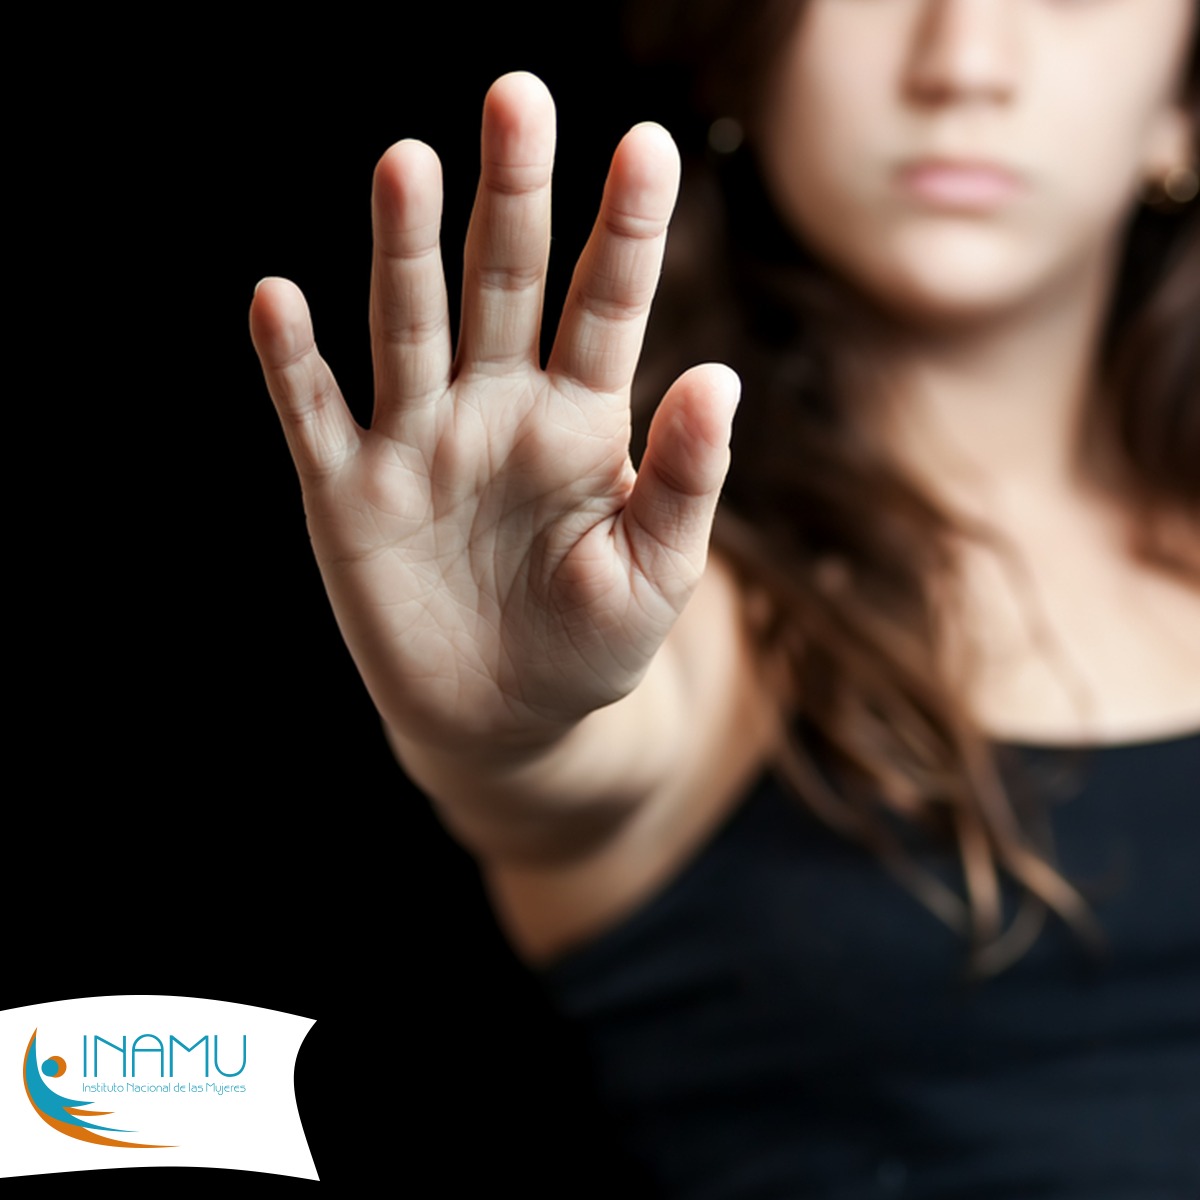 Una joven en blusa negra con la imagen distorcionada, se ve su mano en señal de alto con el logo institucional para dar a entender el alto a la violencia contra las mujeres